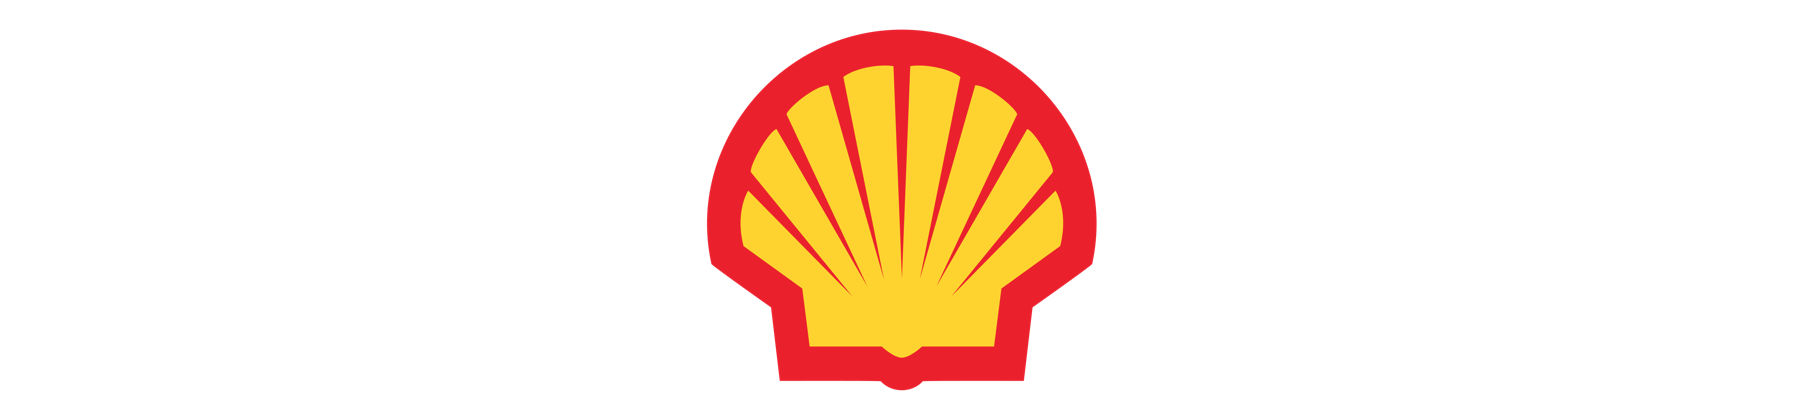 shell logo for website banner.png